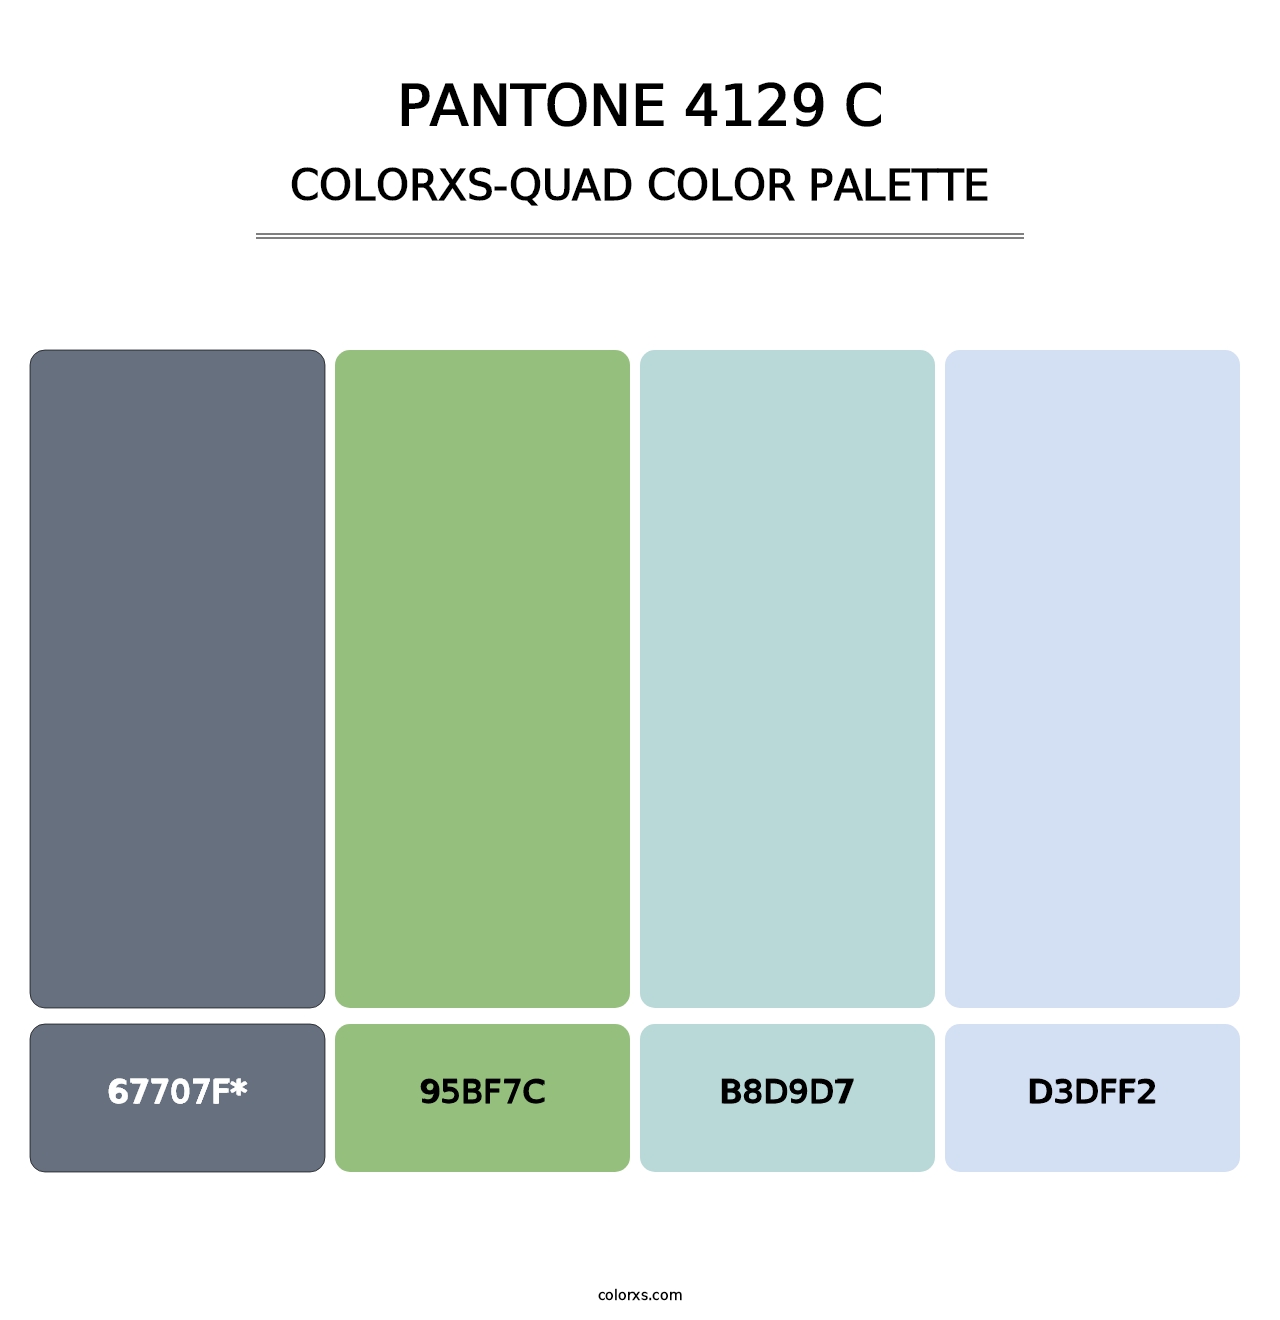 PANTONE 4129 C - Colorxs Quad Palette